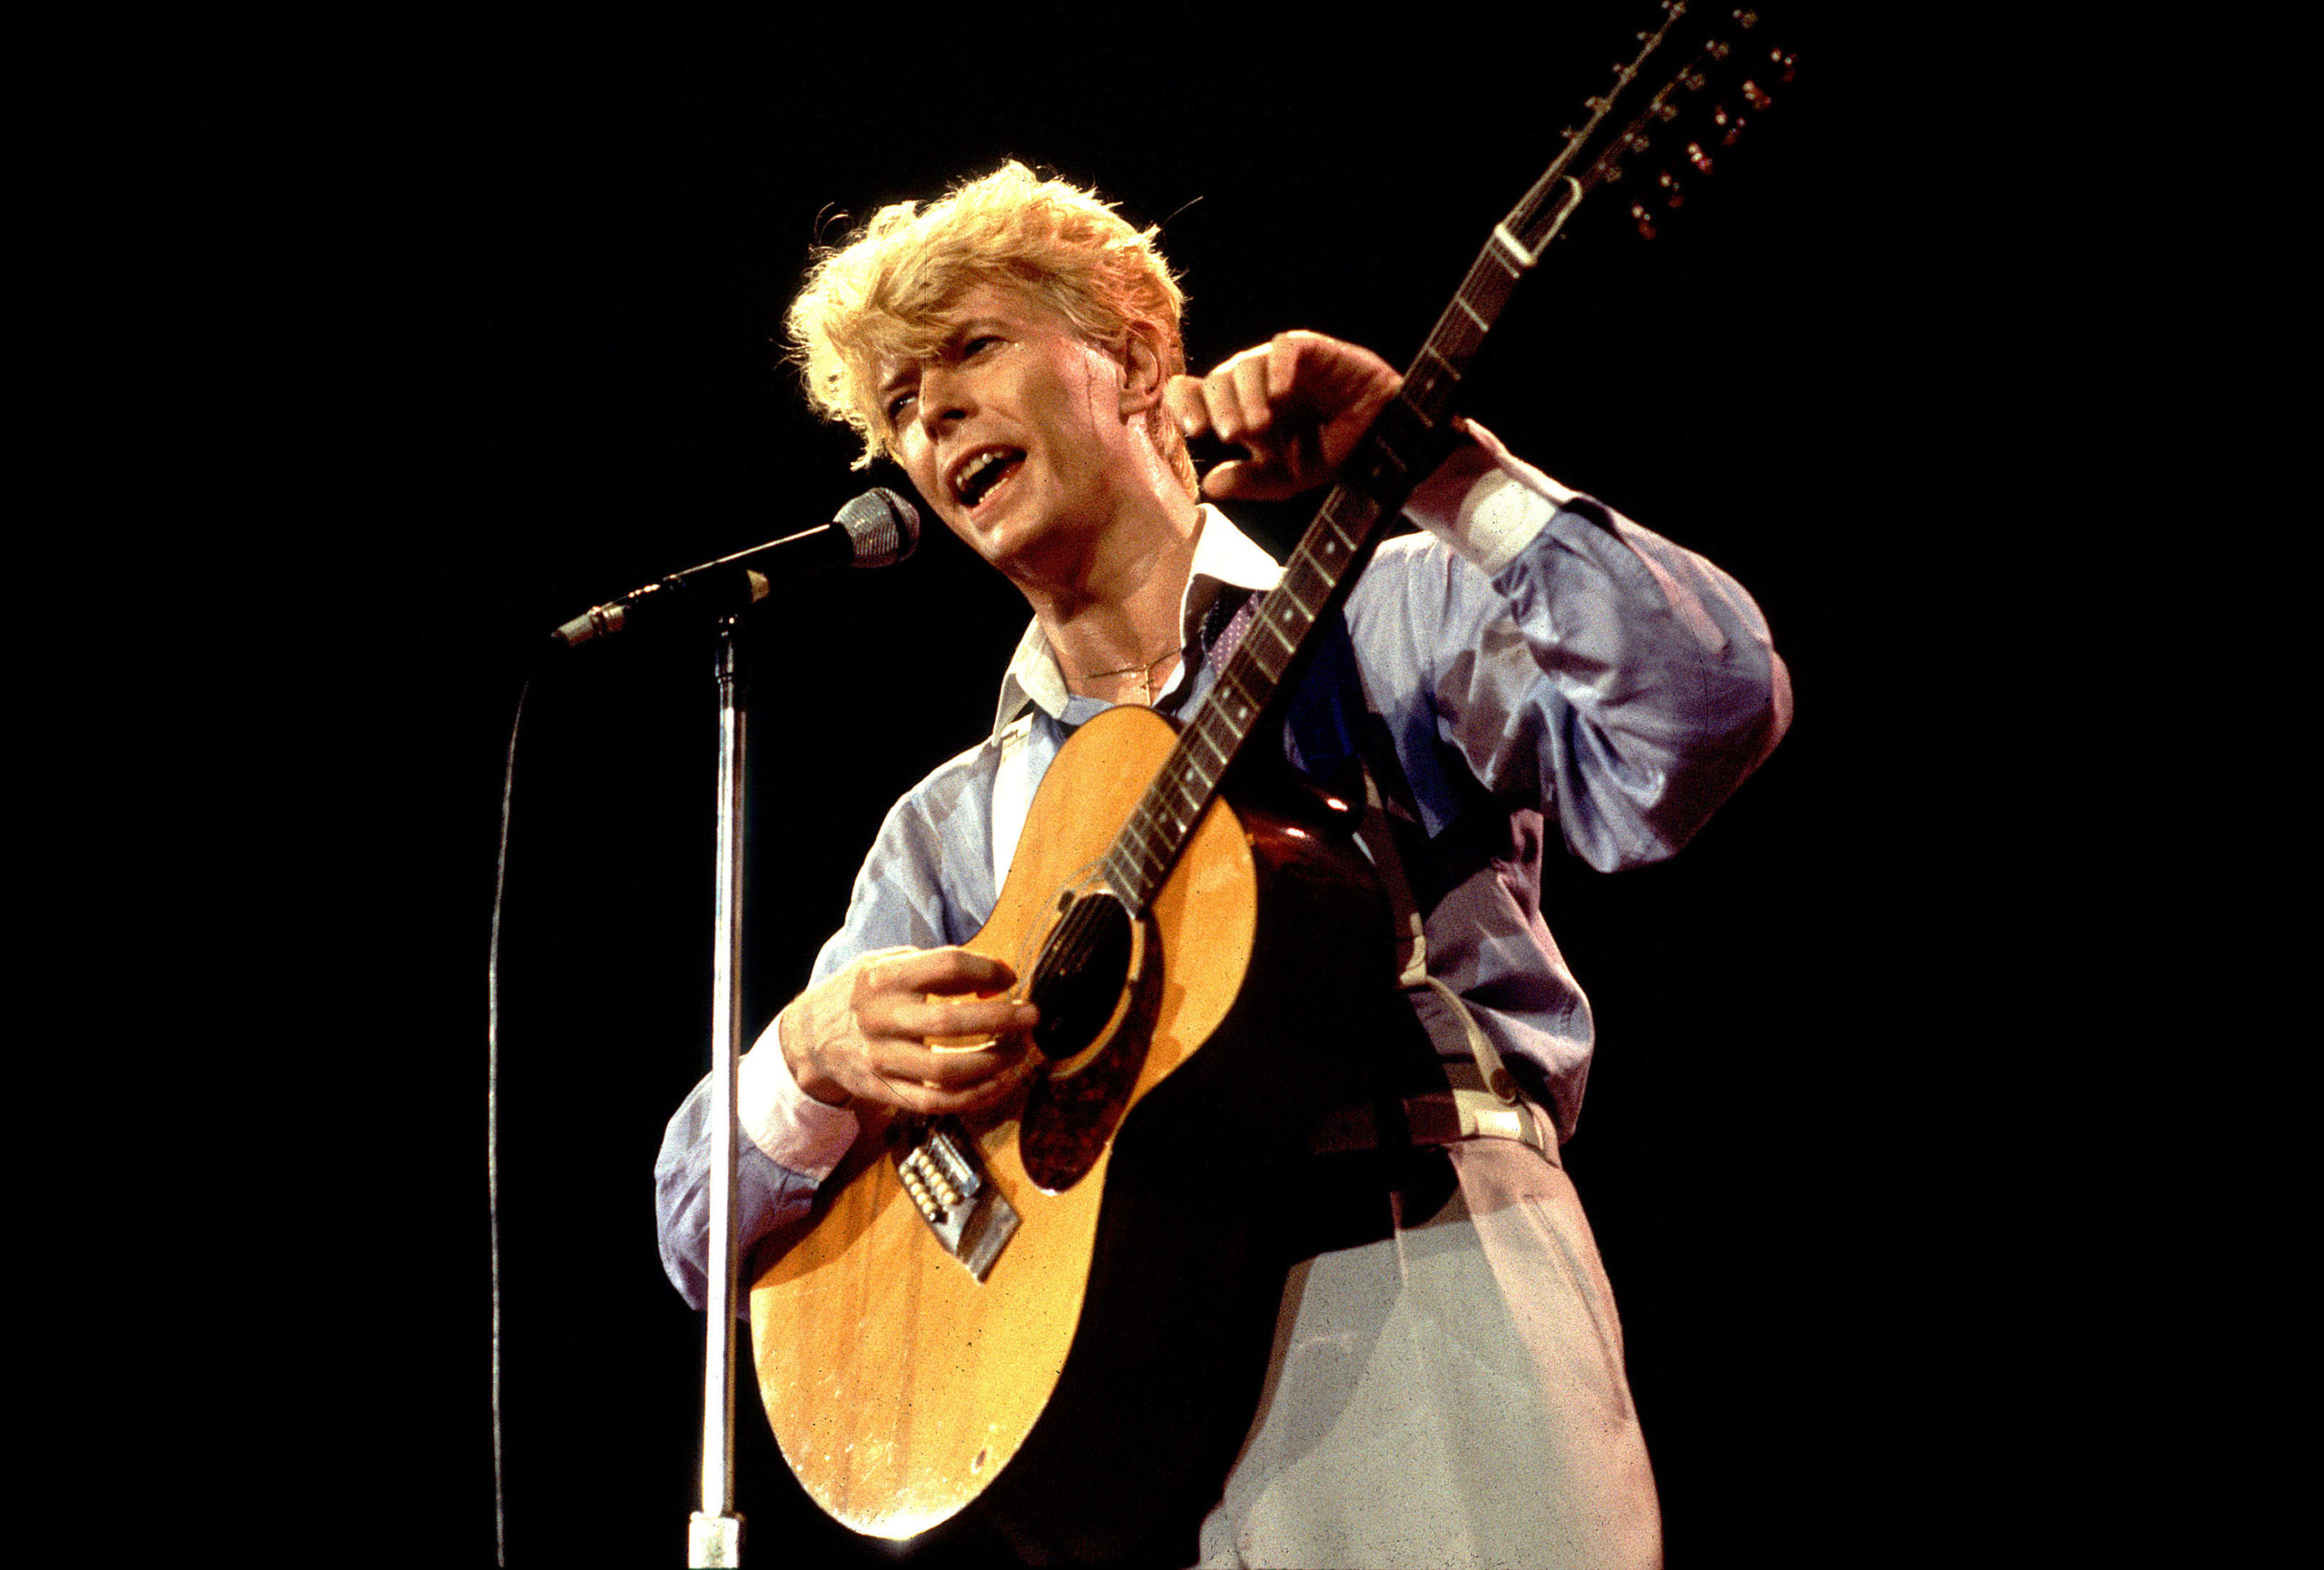 David Bowie live auf der Bühne, 1983.